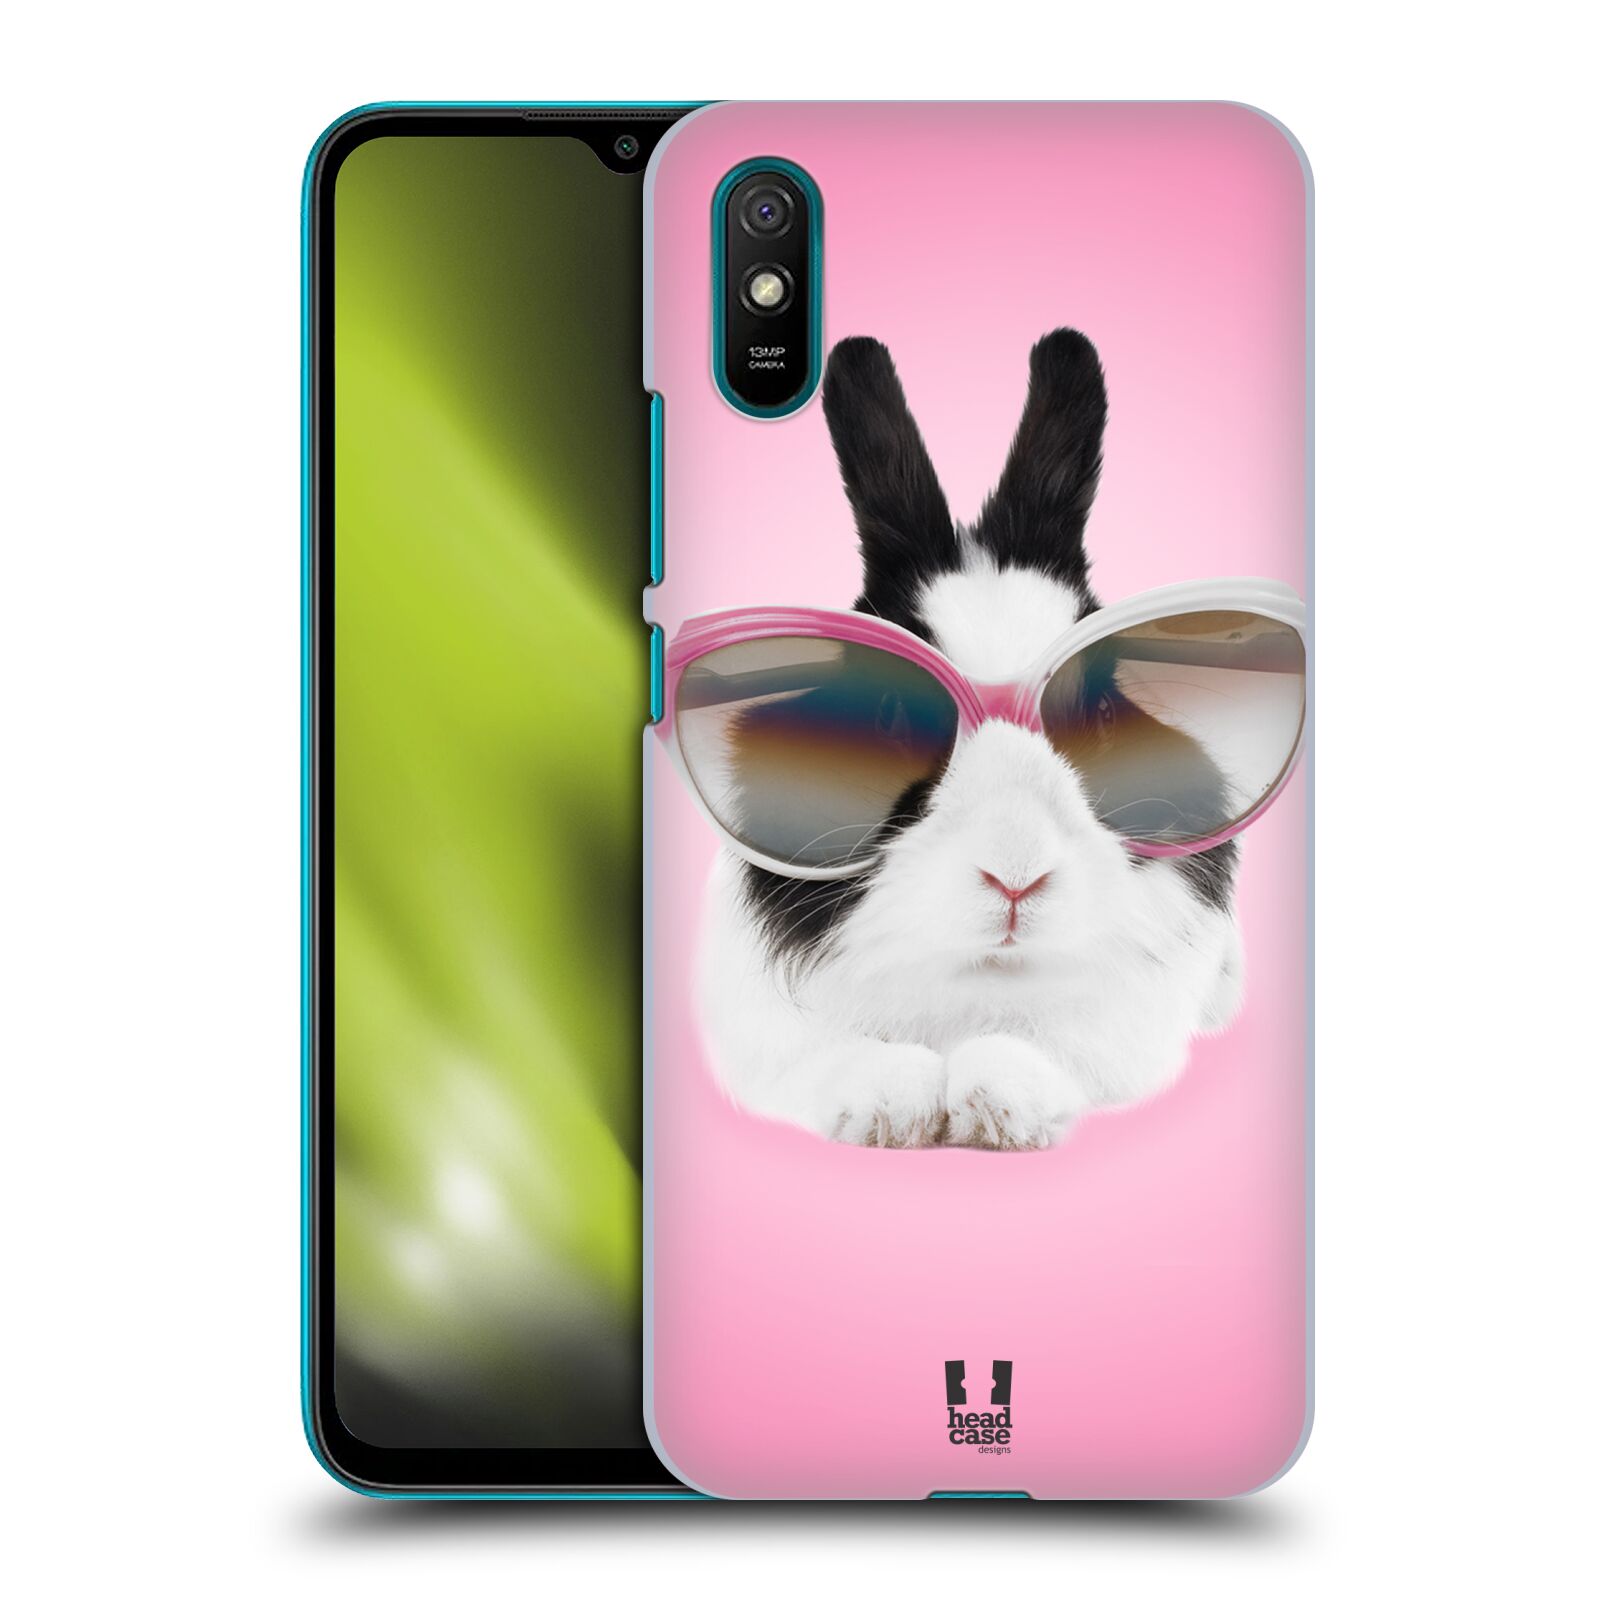 Plastový obal HEAD CASE na mobil Xiaomi Redmi 9A / 9AT vzor Legrační zvířátka roztomilý králíček s brýlemi růžová